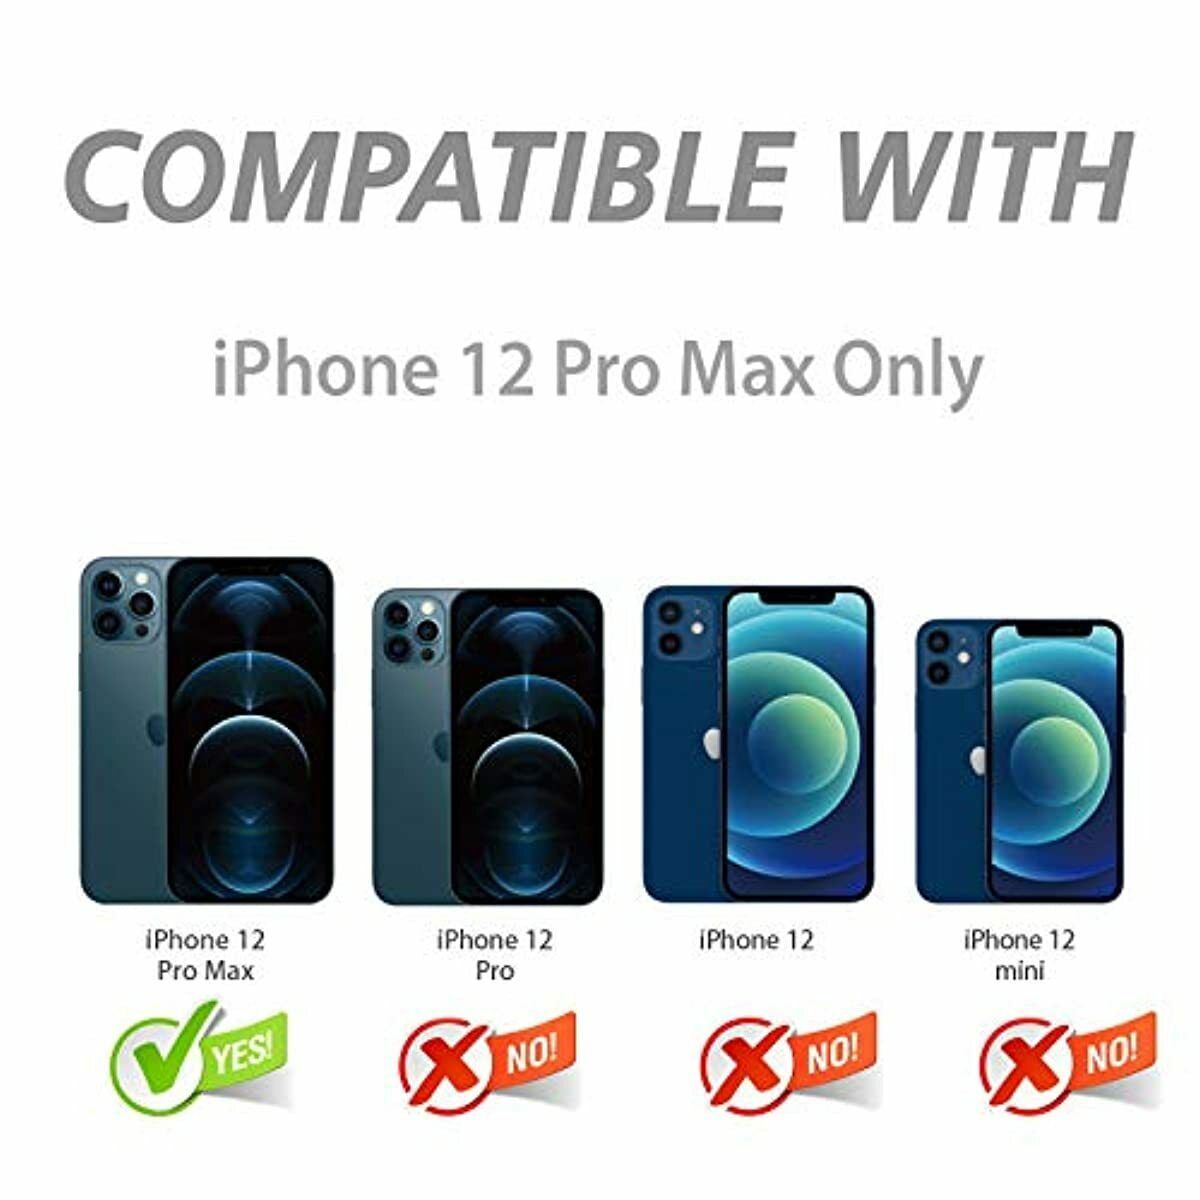  NEW'C Paquete de 4, 2 vidrios templados para iPhone 12 / iPhone  12 Pro y 2 protectores de pantalla de cámara trasera - Anti arañazos - Sin  burbujas de aire 